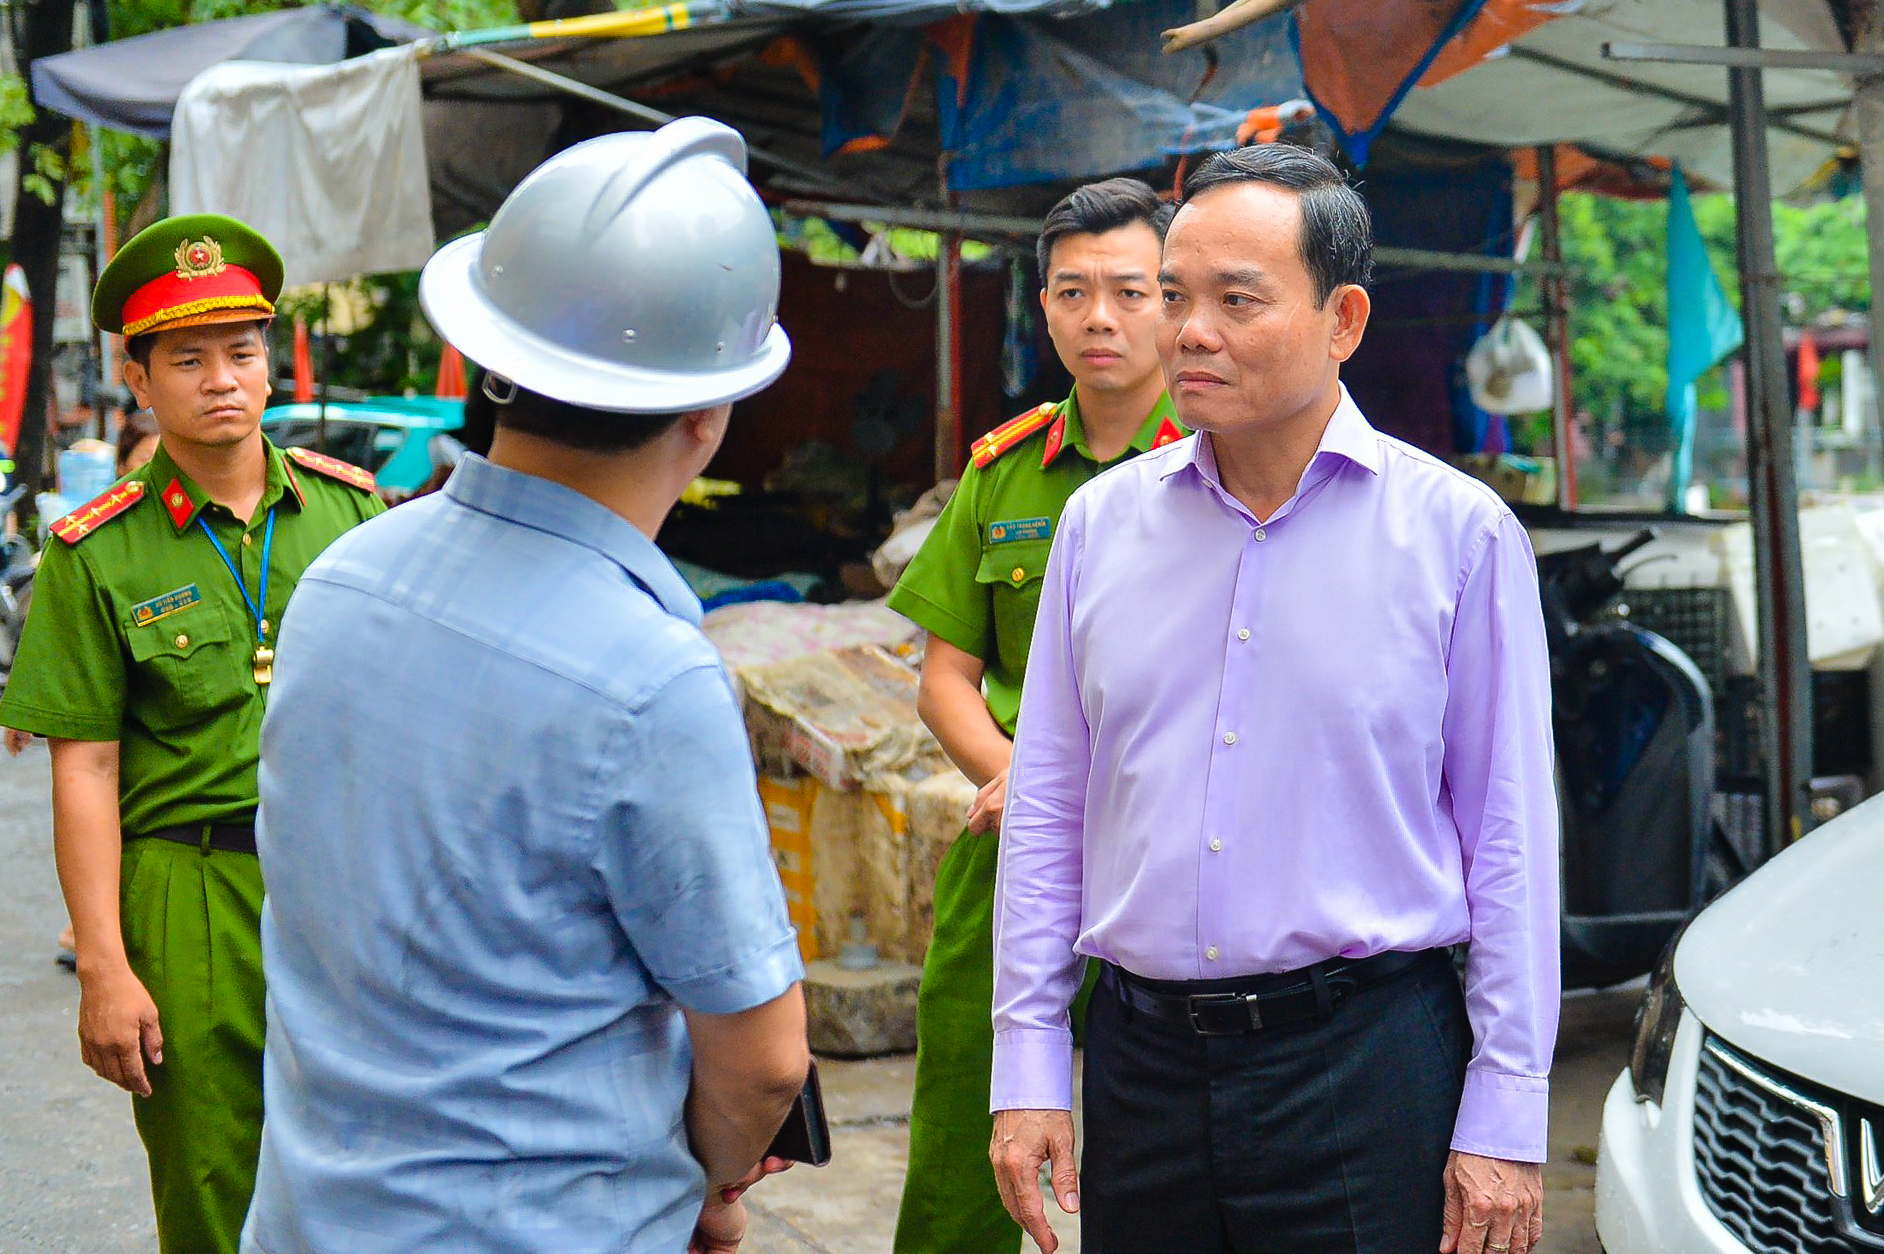 Bí thư Hà Nội, Phó Thủ tướng đến hiện trường chỉ đạo khắc phục hậu quả vụ cháy chung cư mini - Ảnh 3.